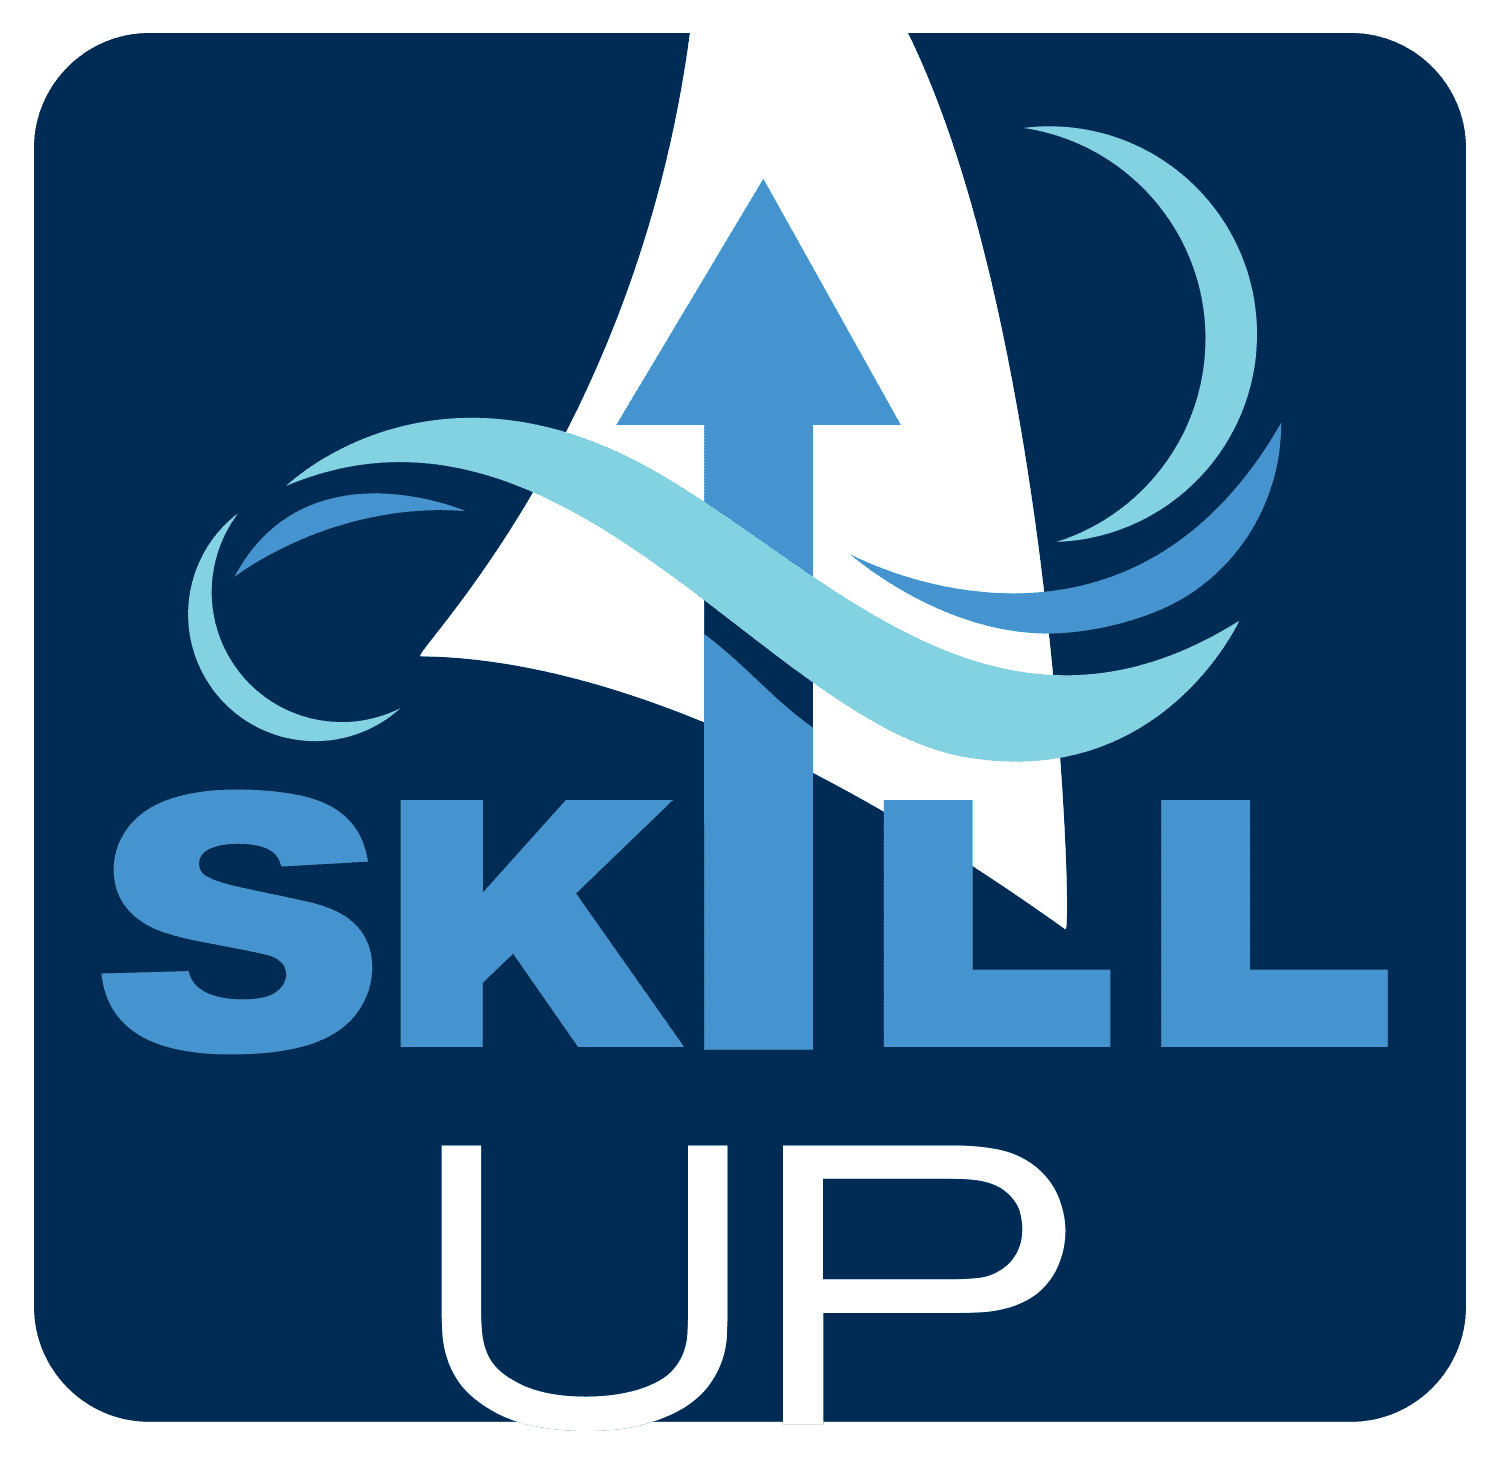 Skill up logo - reversed